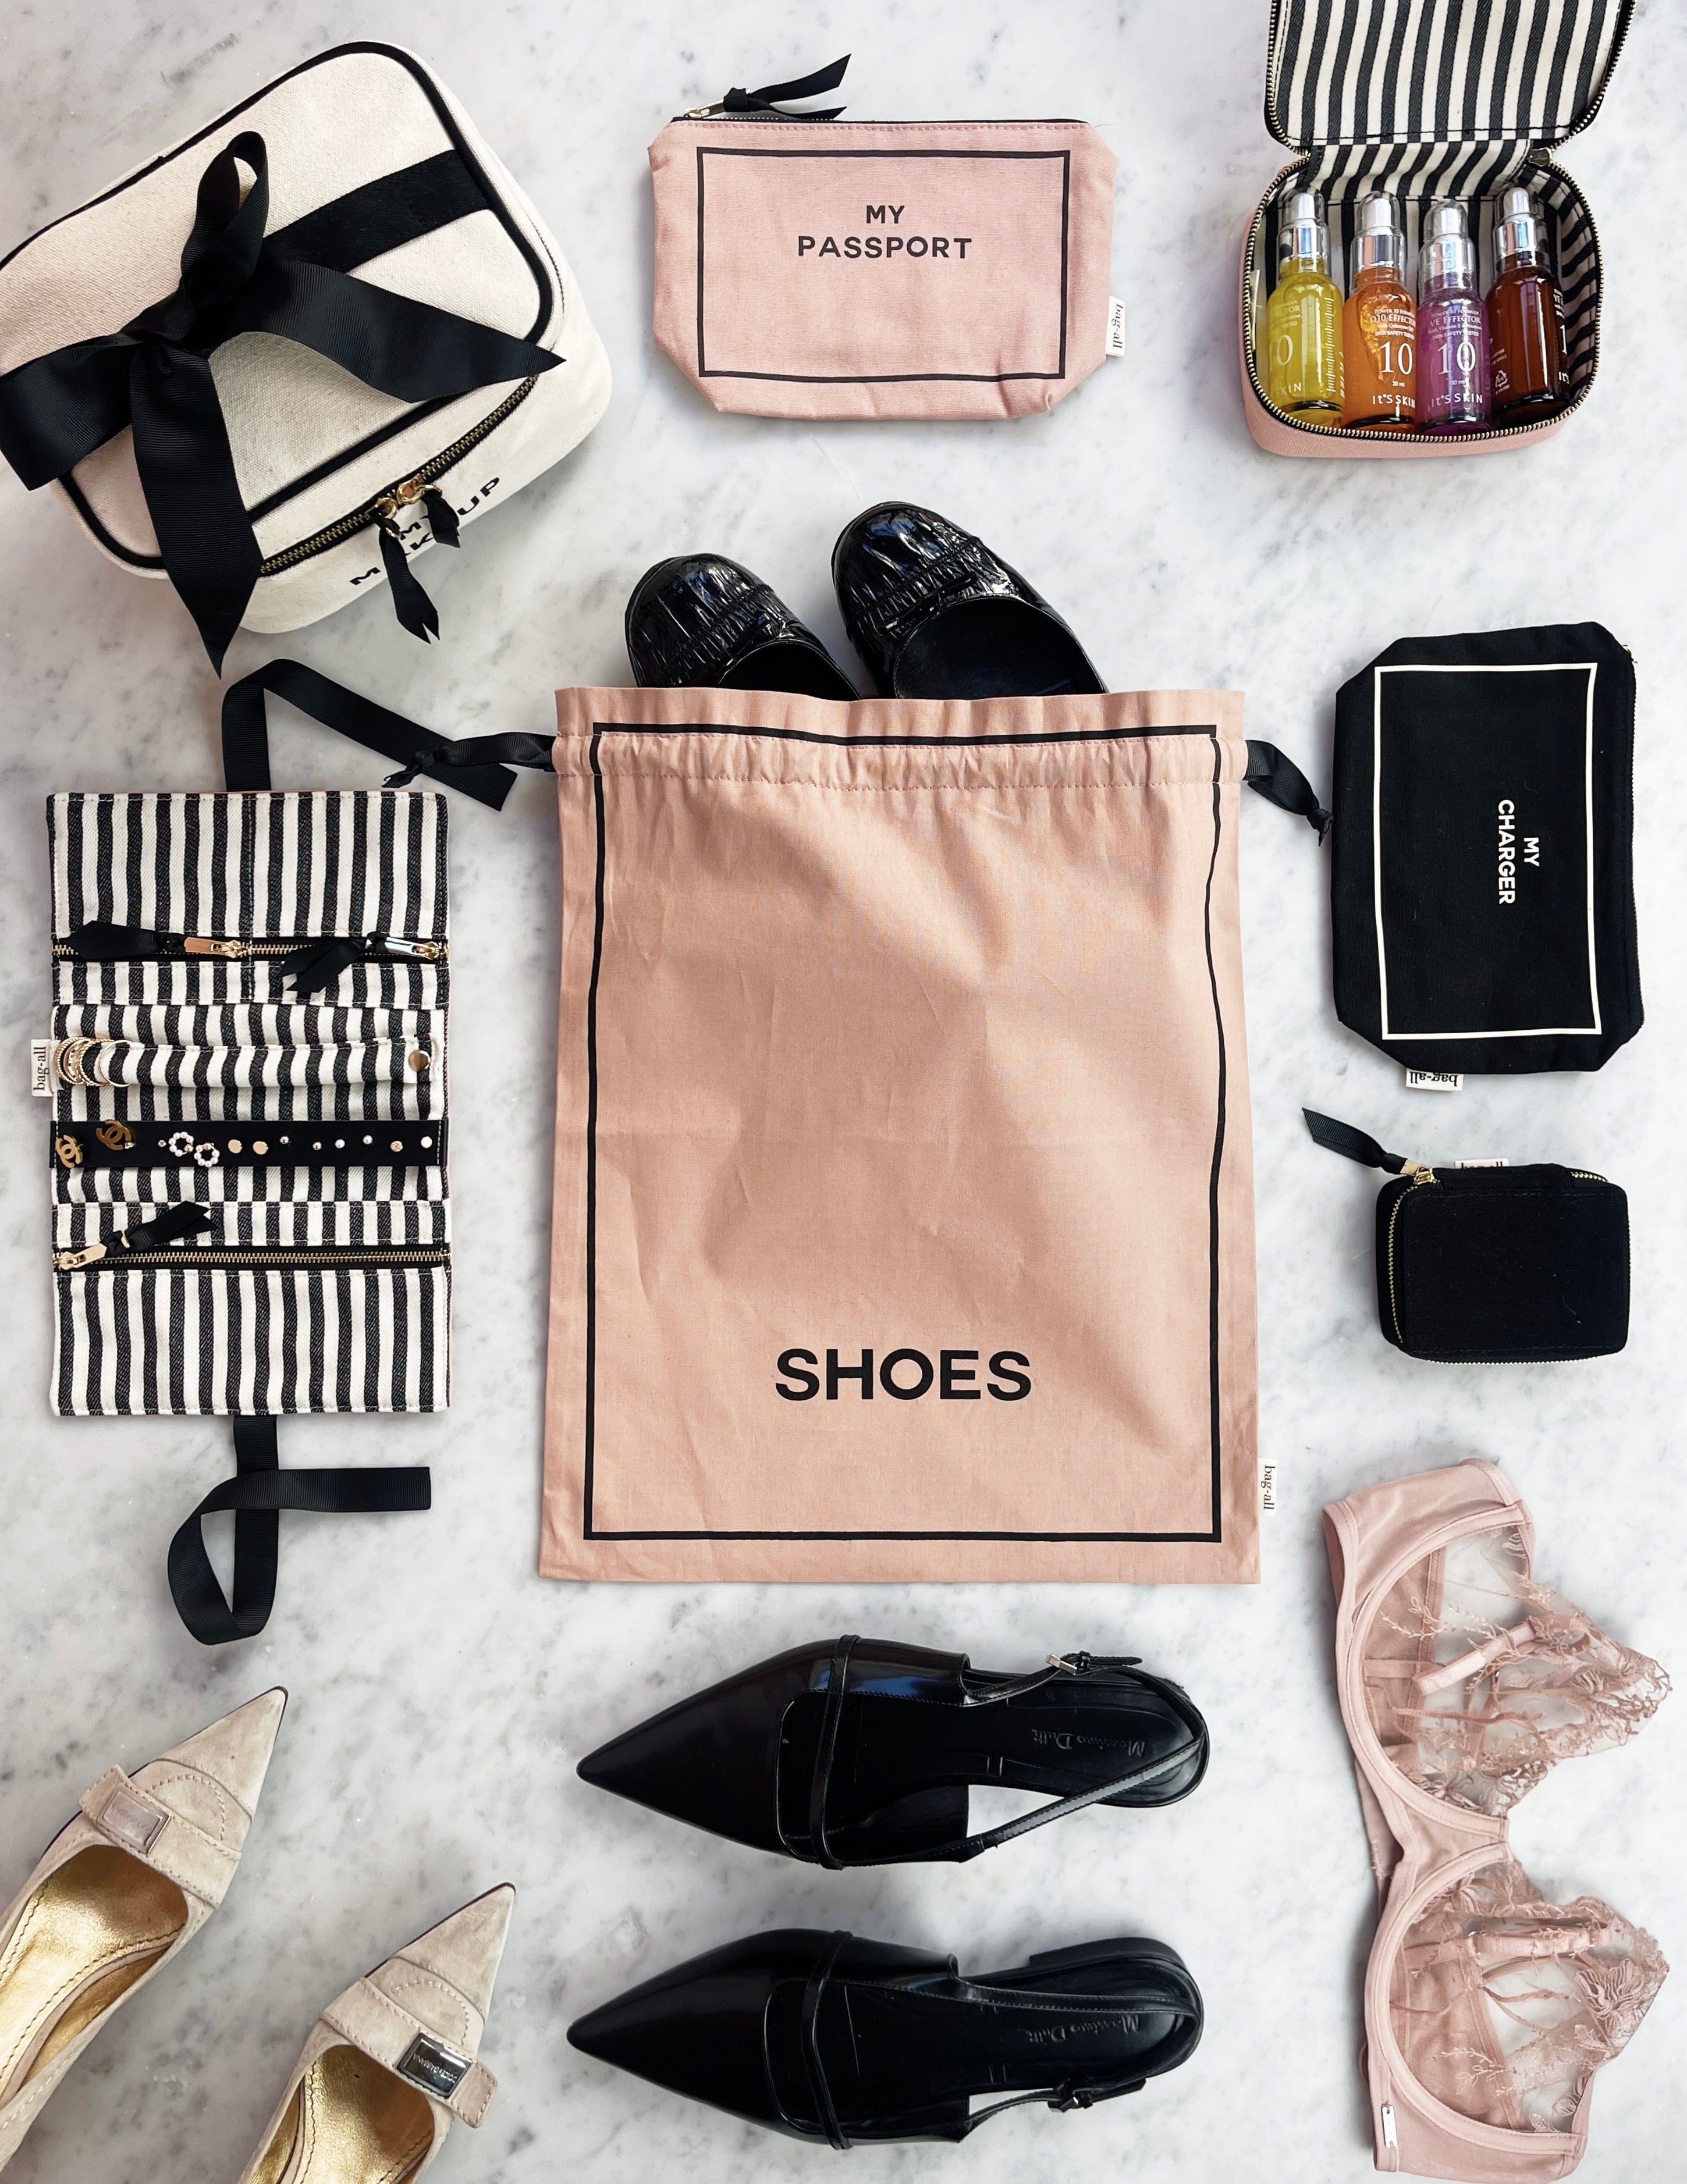 Shoe Organizing Bag, Pink/Blush | Bag-all